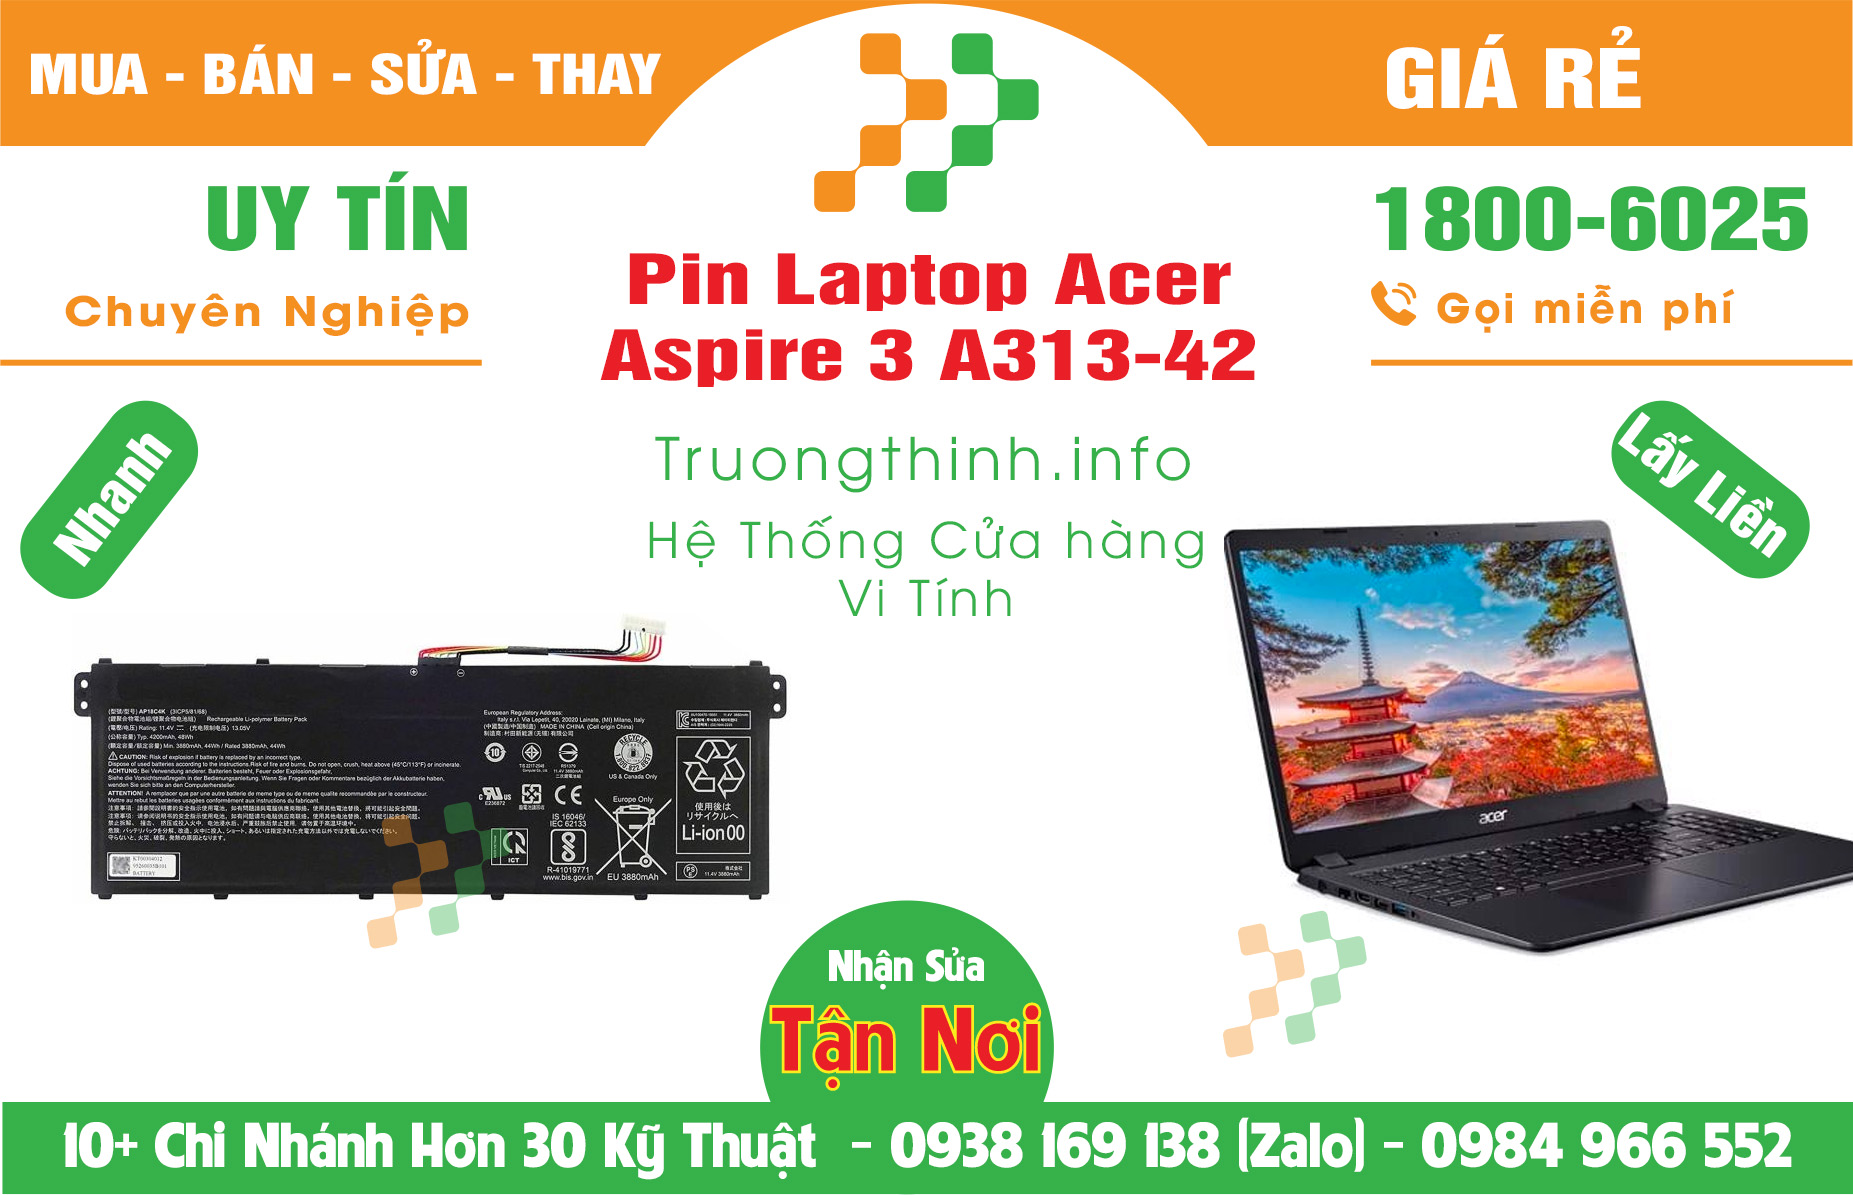 Mua Bán Pin Acer Aspire 3 A313-42 Giá Rẻ | Máy Tính Trường Thịnh Giá Rẻ